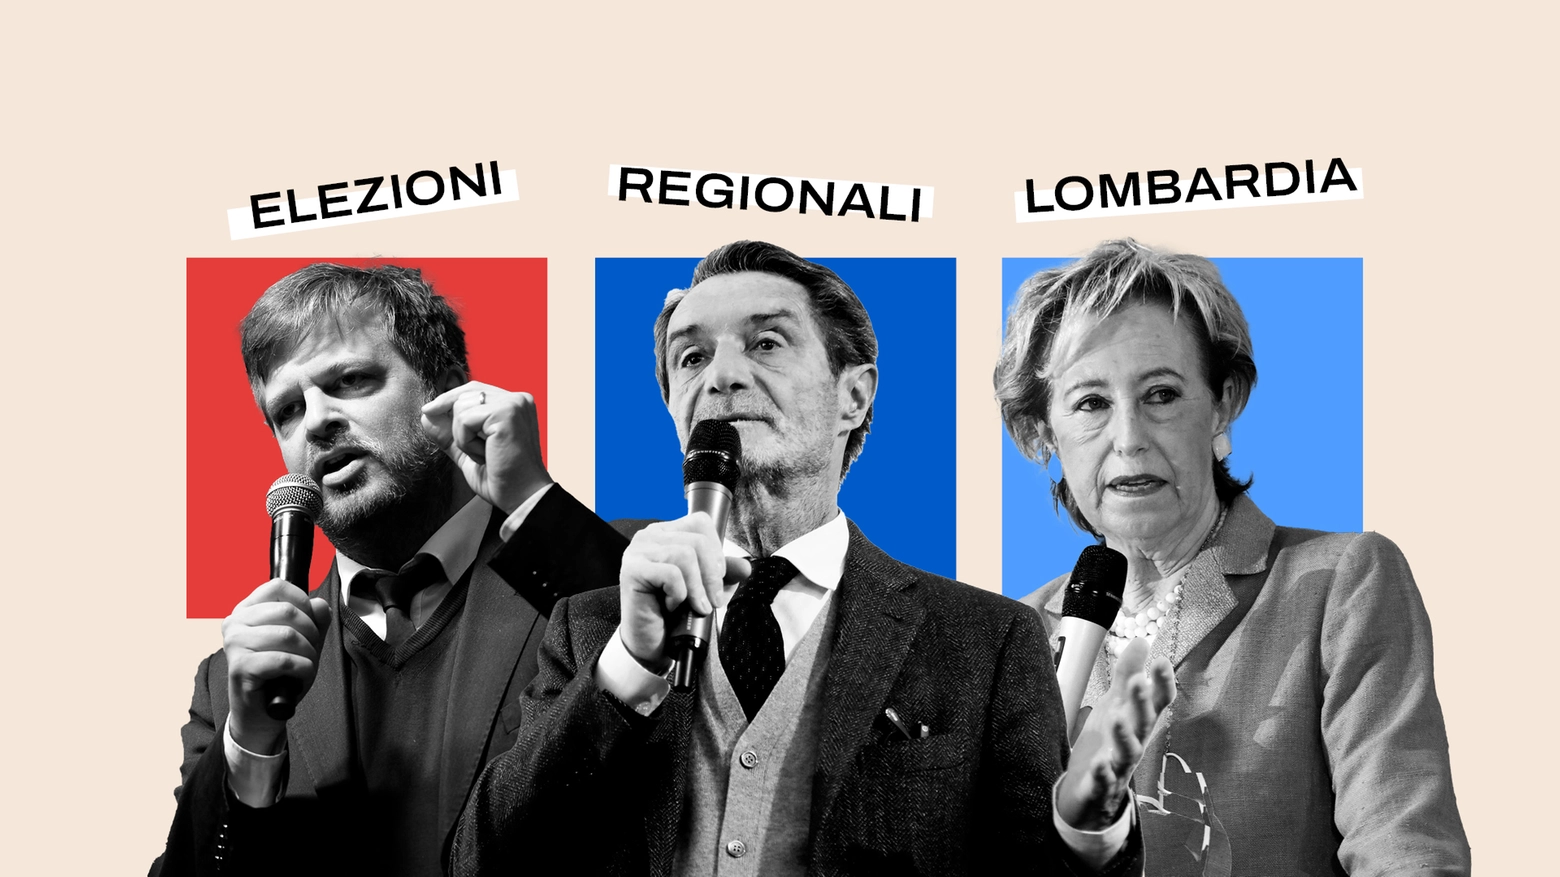 Elezioni regionali in Lombardia: come si vota e cosa c’è da sapere